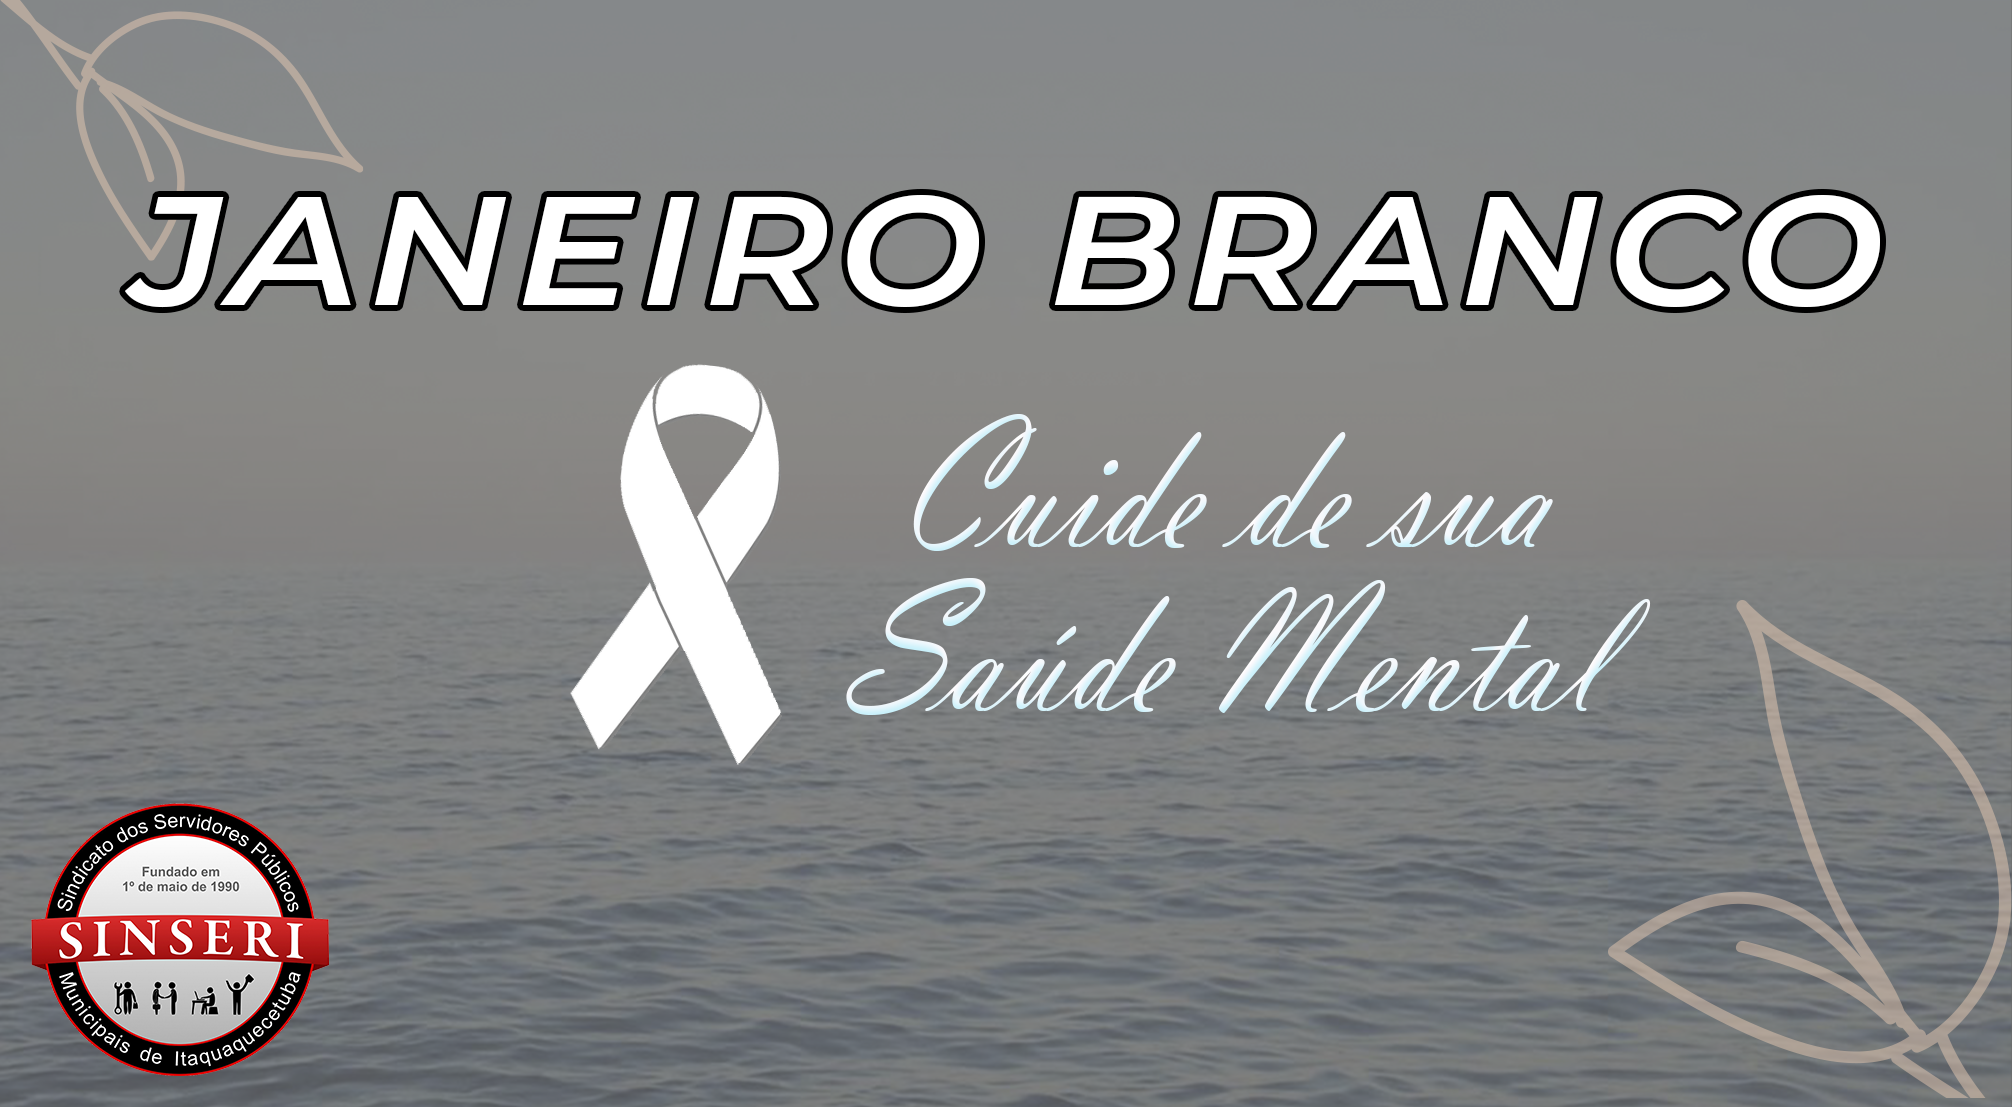 JANEIRO BRANCO | Campanha destaca cuidados importantes com a saúde mental